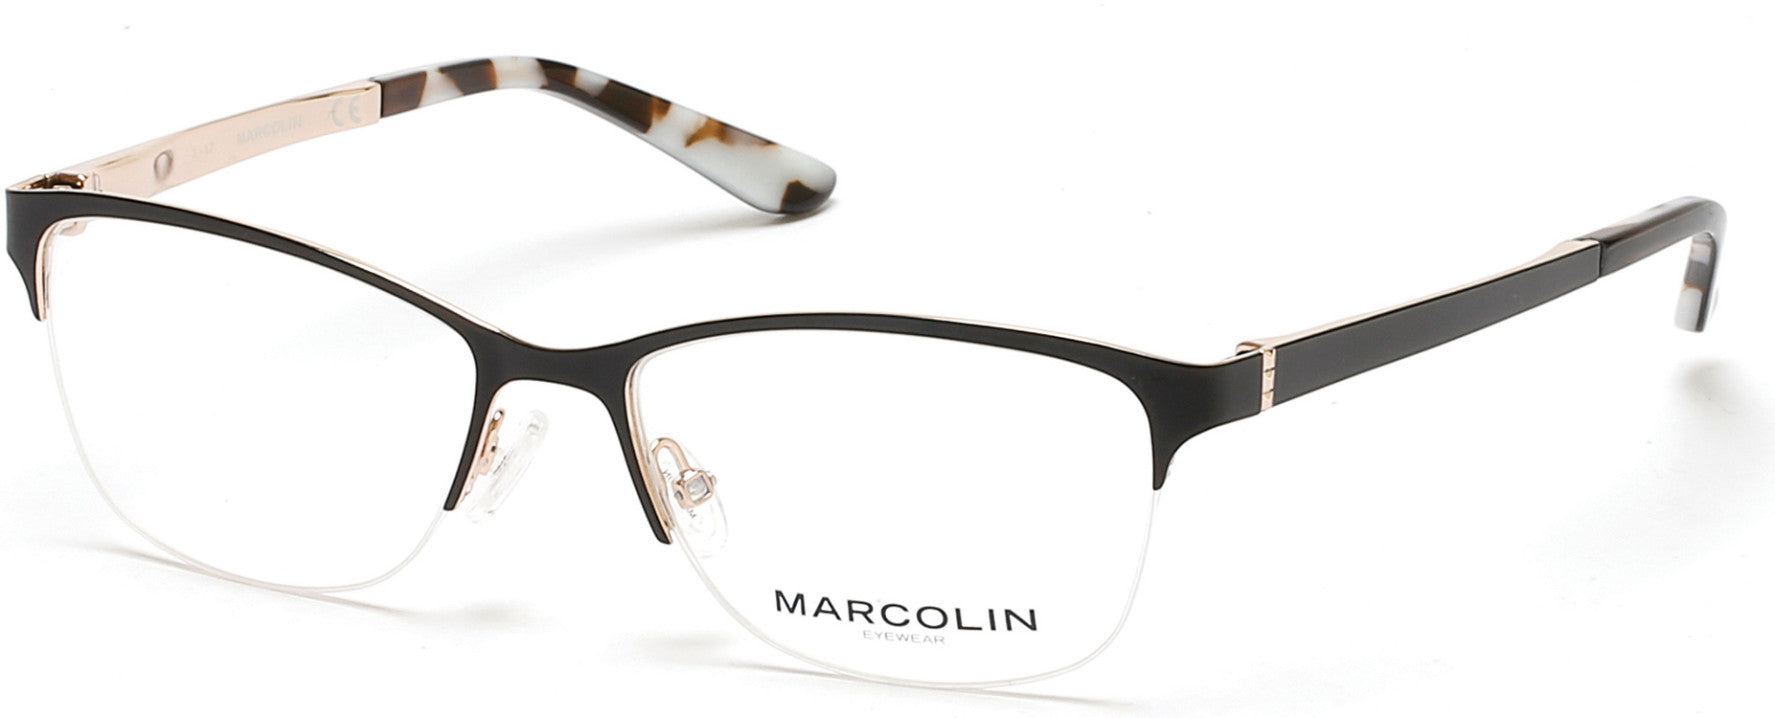 Marcolin MA5001 Eyeglasses 005-005 - Black